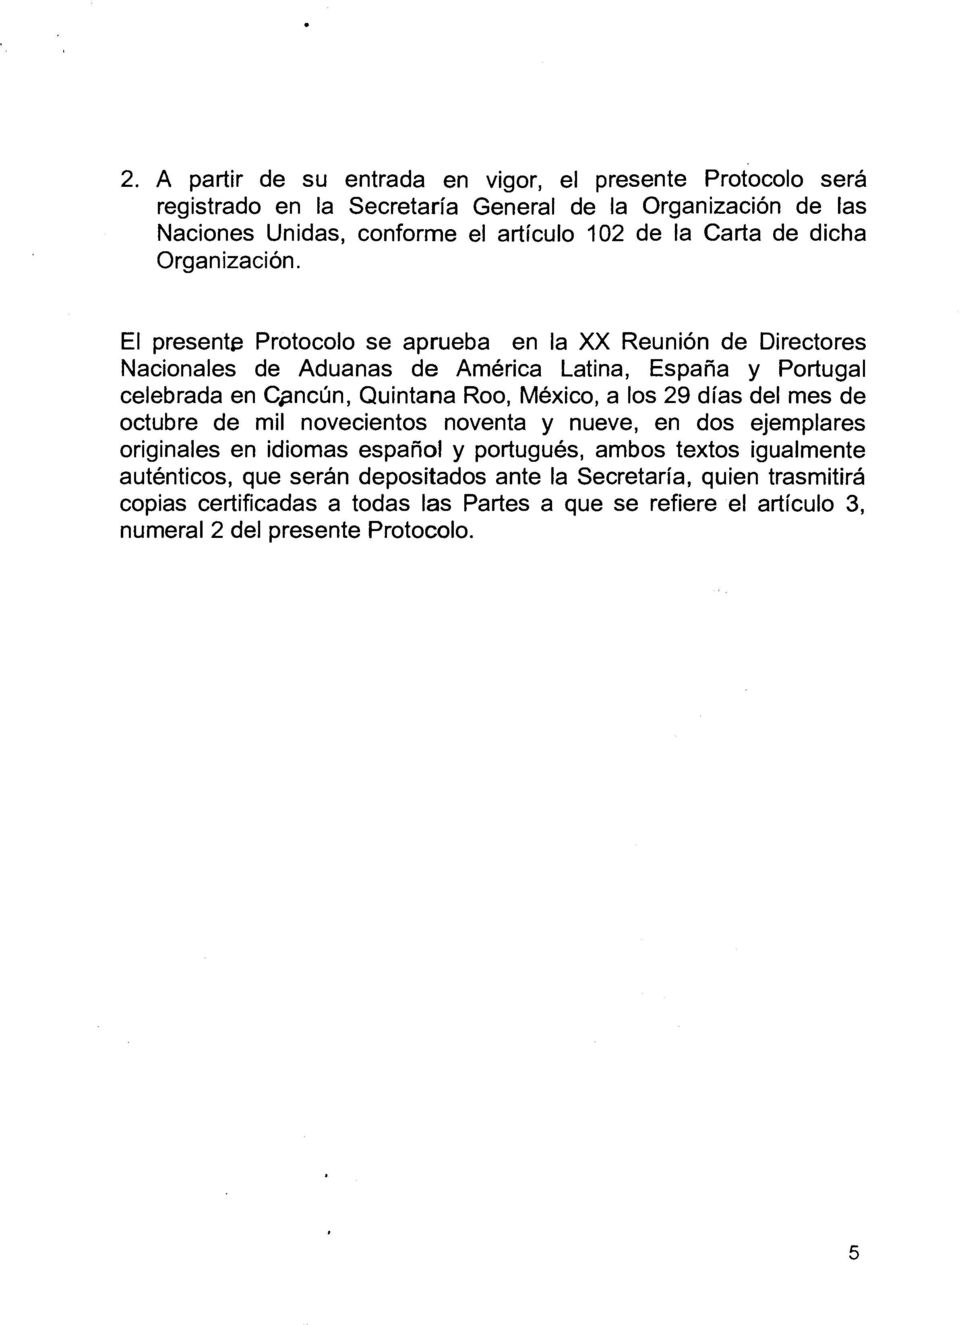 El presente Protocolo se aprueba en Ia XX Reunion de Directores Nacionales de Aduanas de America Latina, Espana y Portugal celebrada en Cpncun, Quintana Roo, Mexico, a los 29